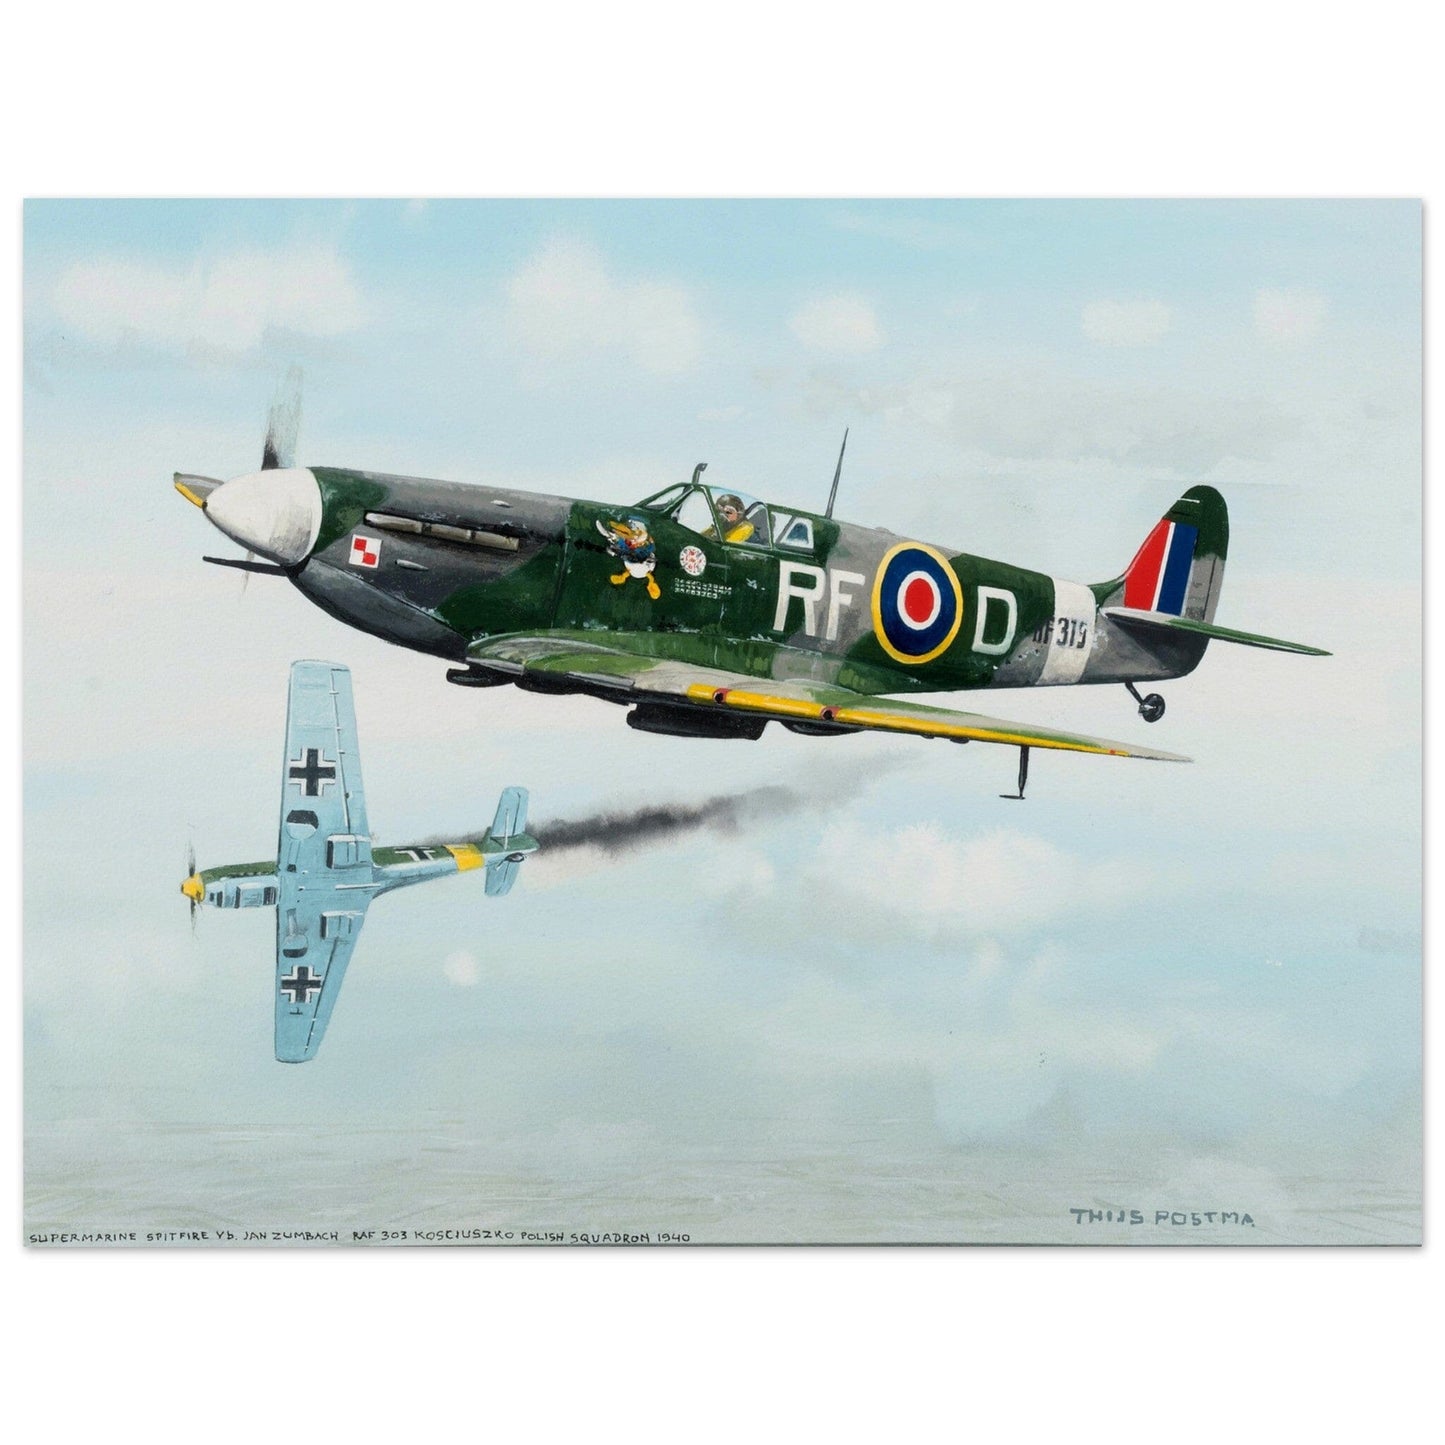 Thijs Postma - Poster - Supermarine Spitfire Vb versus Messerschmitt Bf 109E Poster Only TP Aviation Art 45x60 cm / 18x24″ 